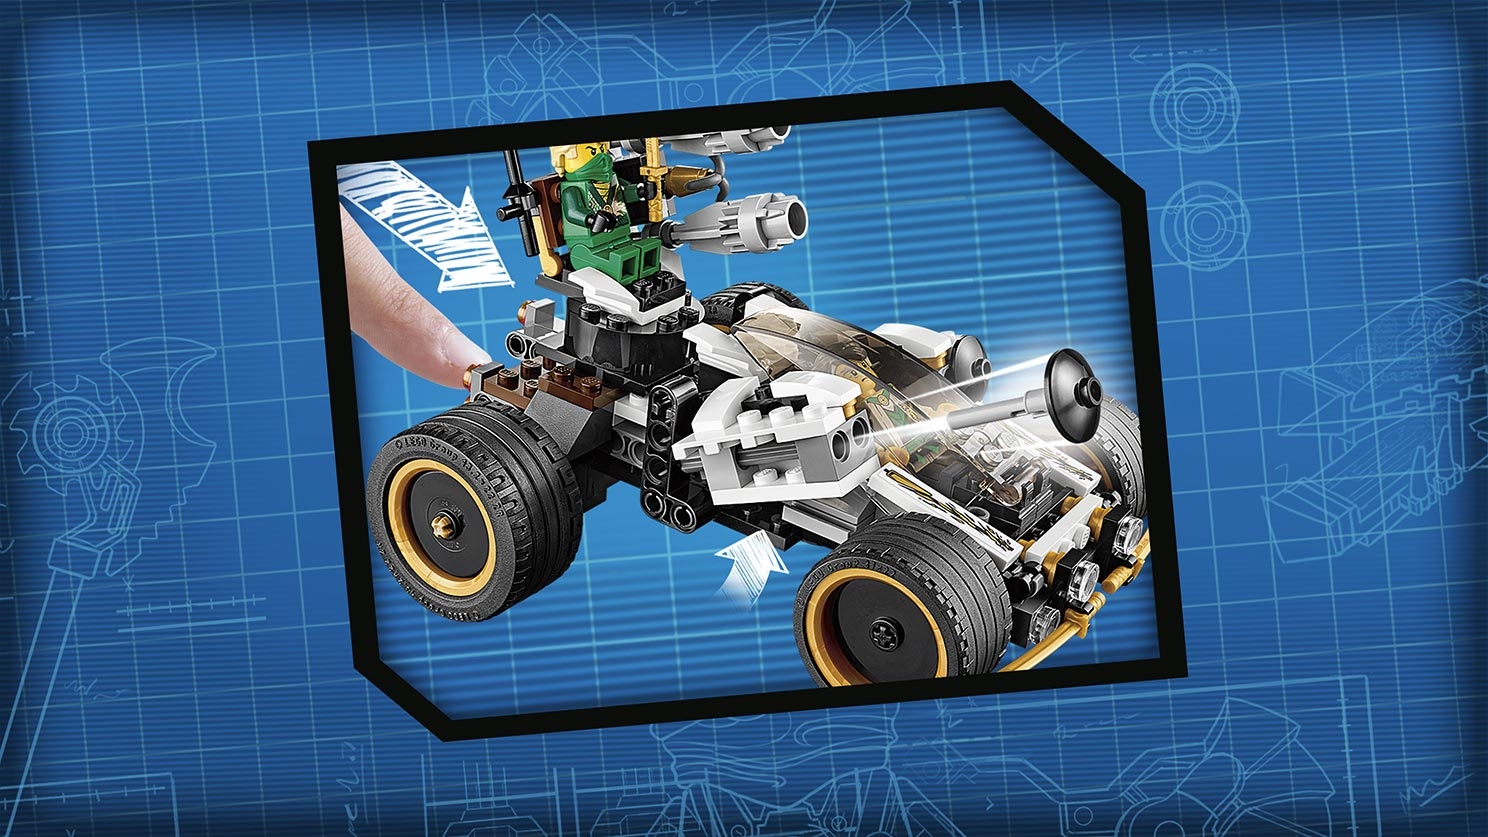 LEGO Ninjago Nindroid MechDragon and Nya?s Car with 5 Minifigures Set